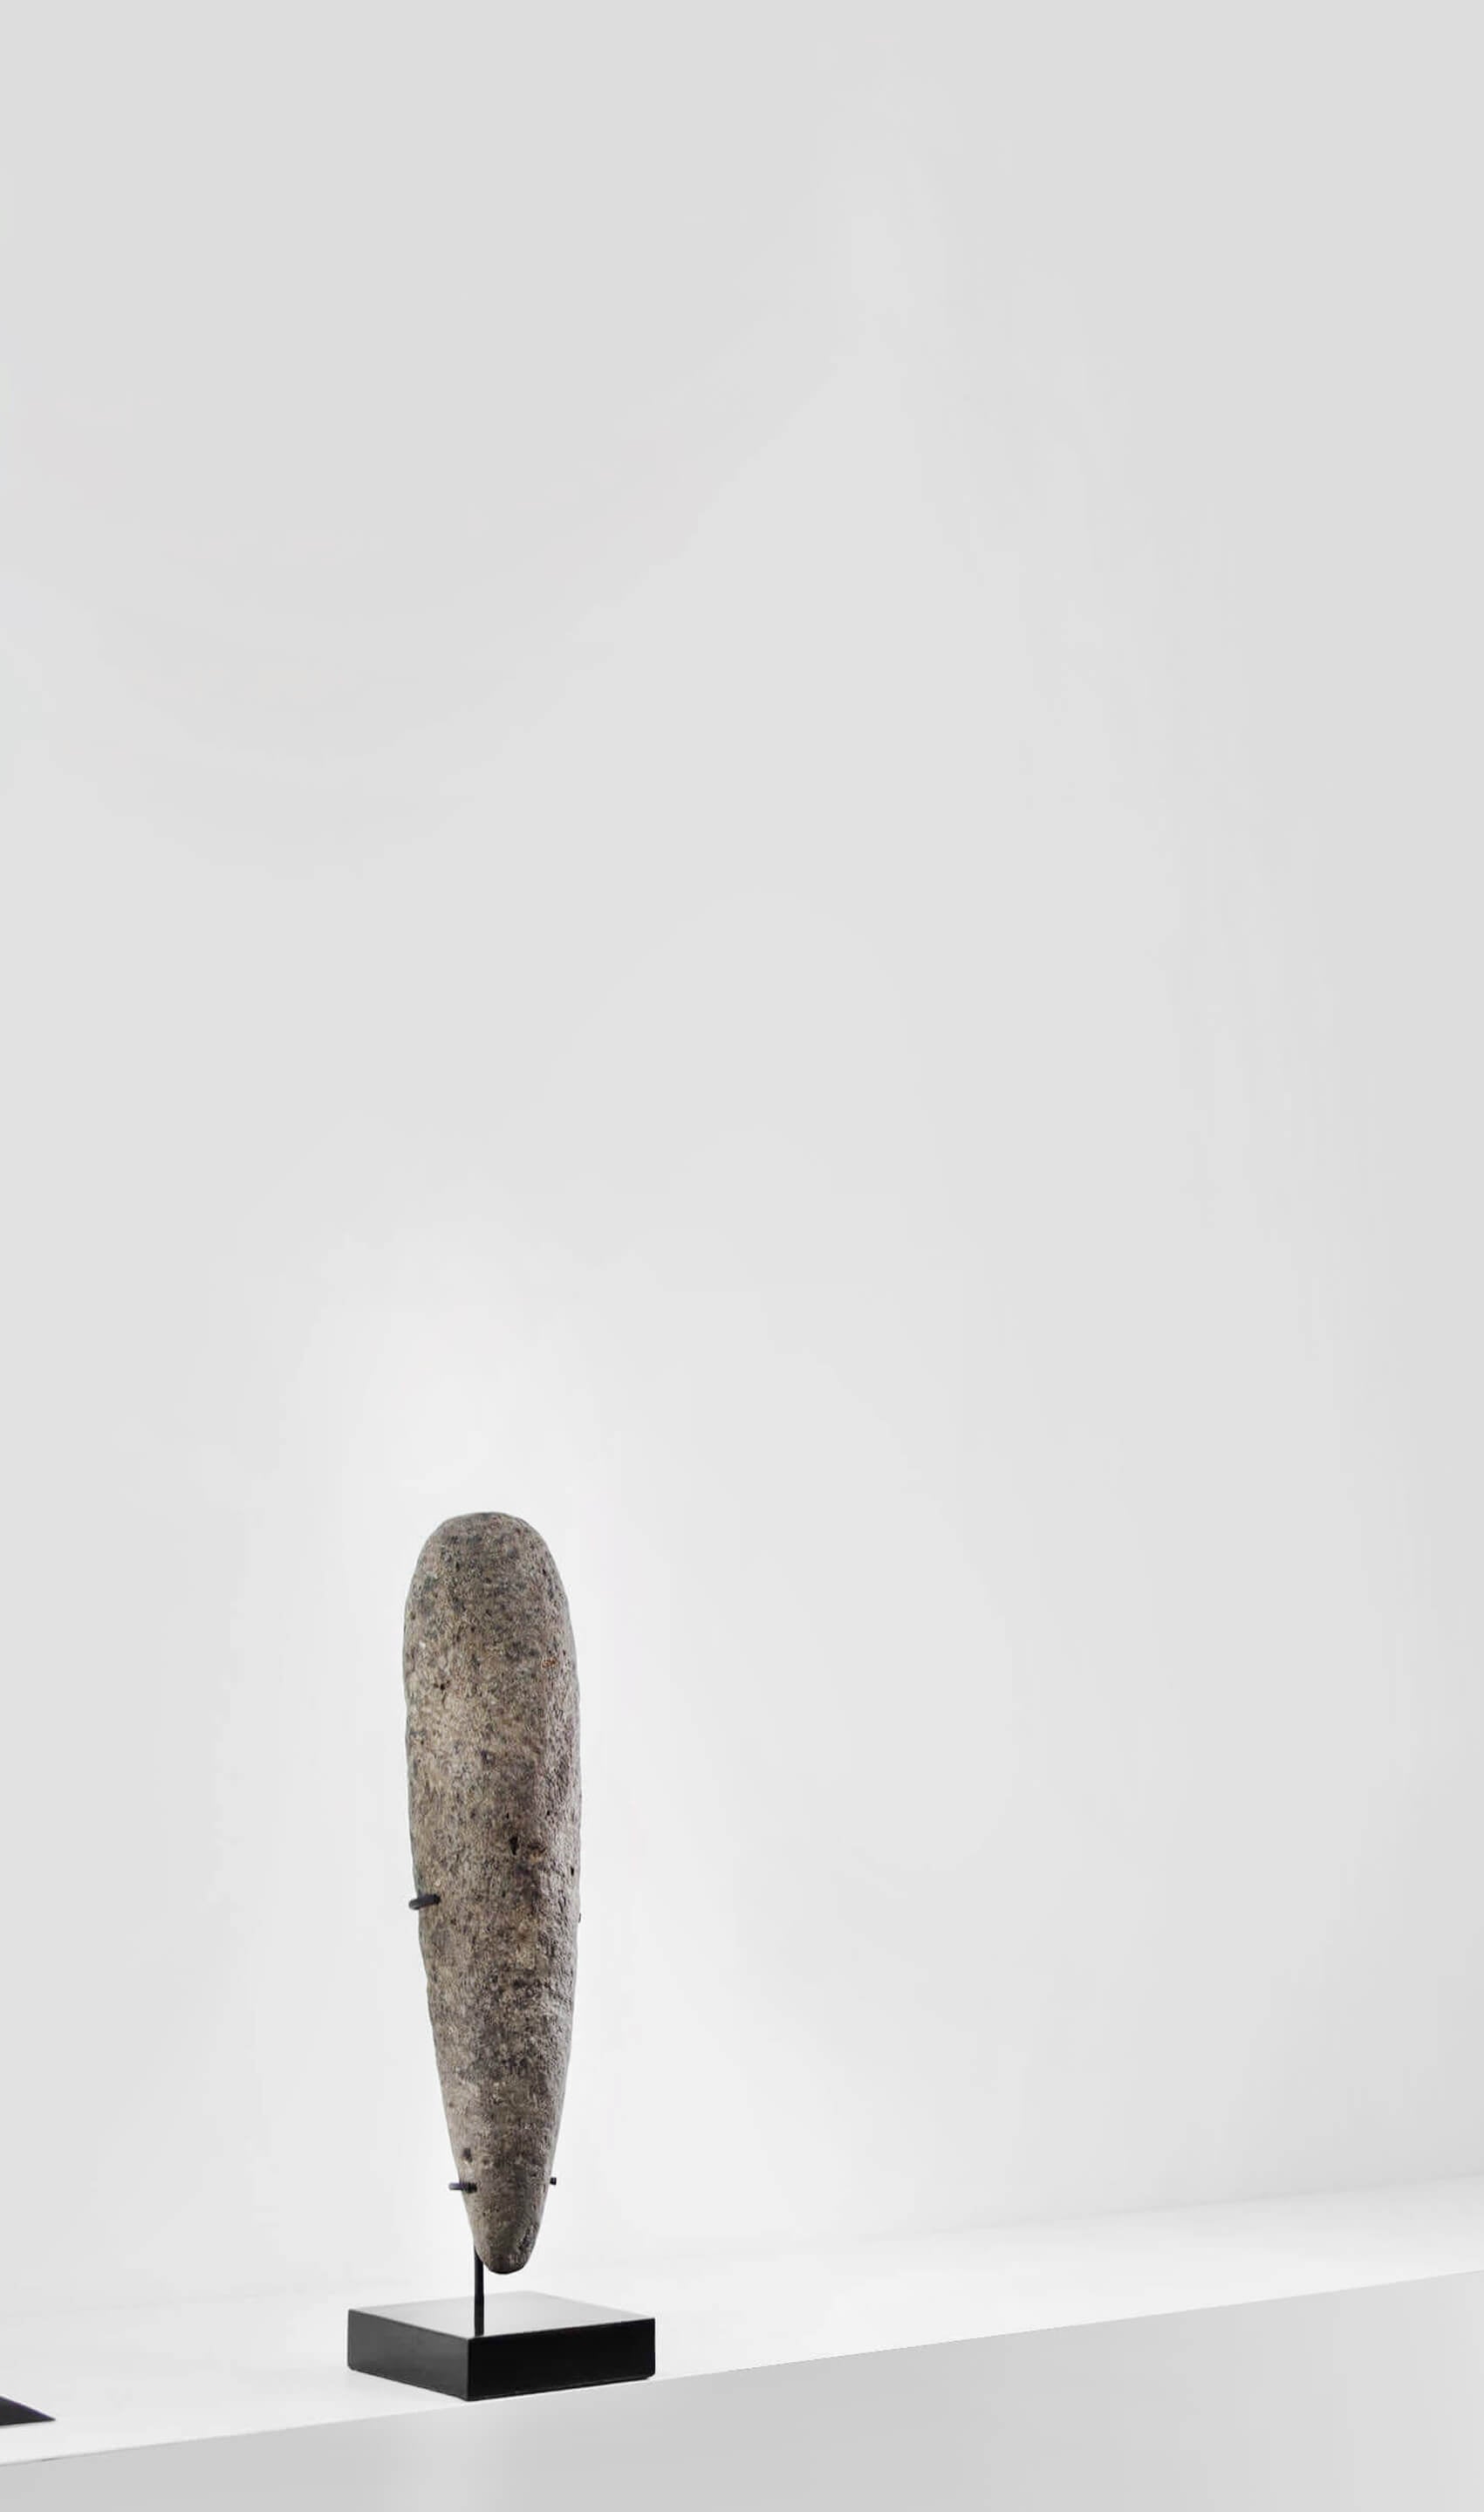 アーティファクト 新石器時代 カプシアン 手杵 [紀元前 8,500 年] 440mm